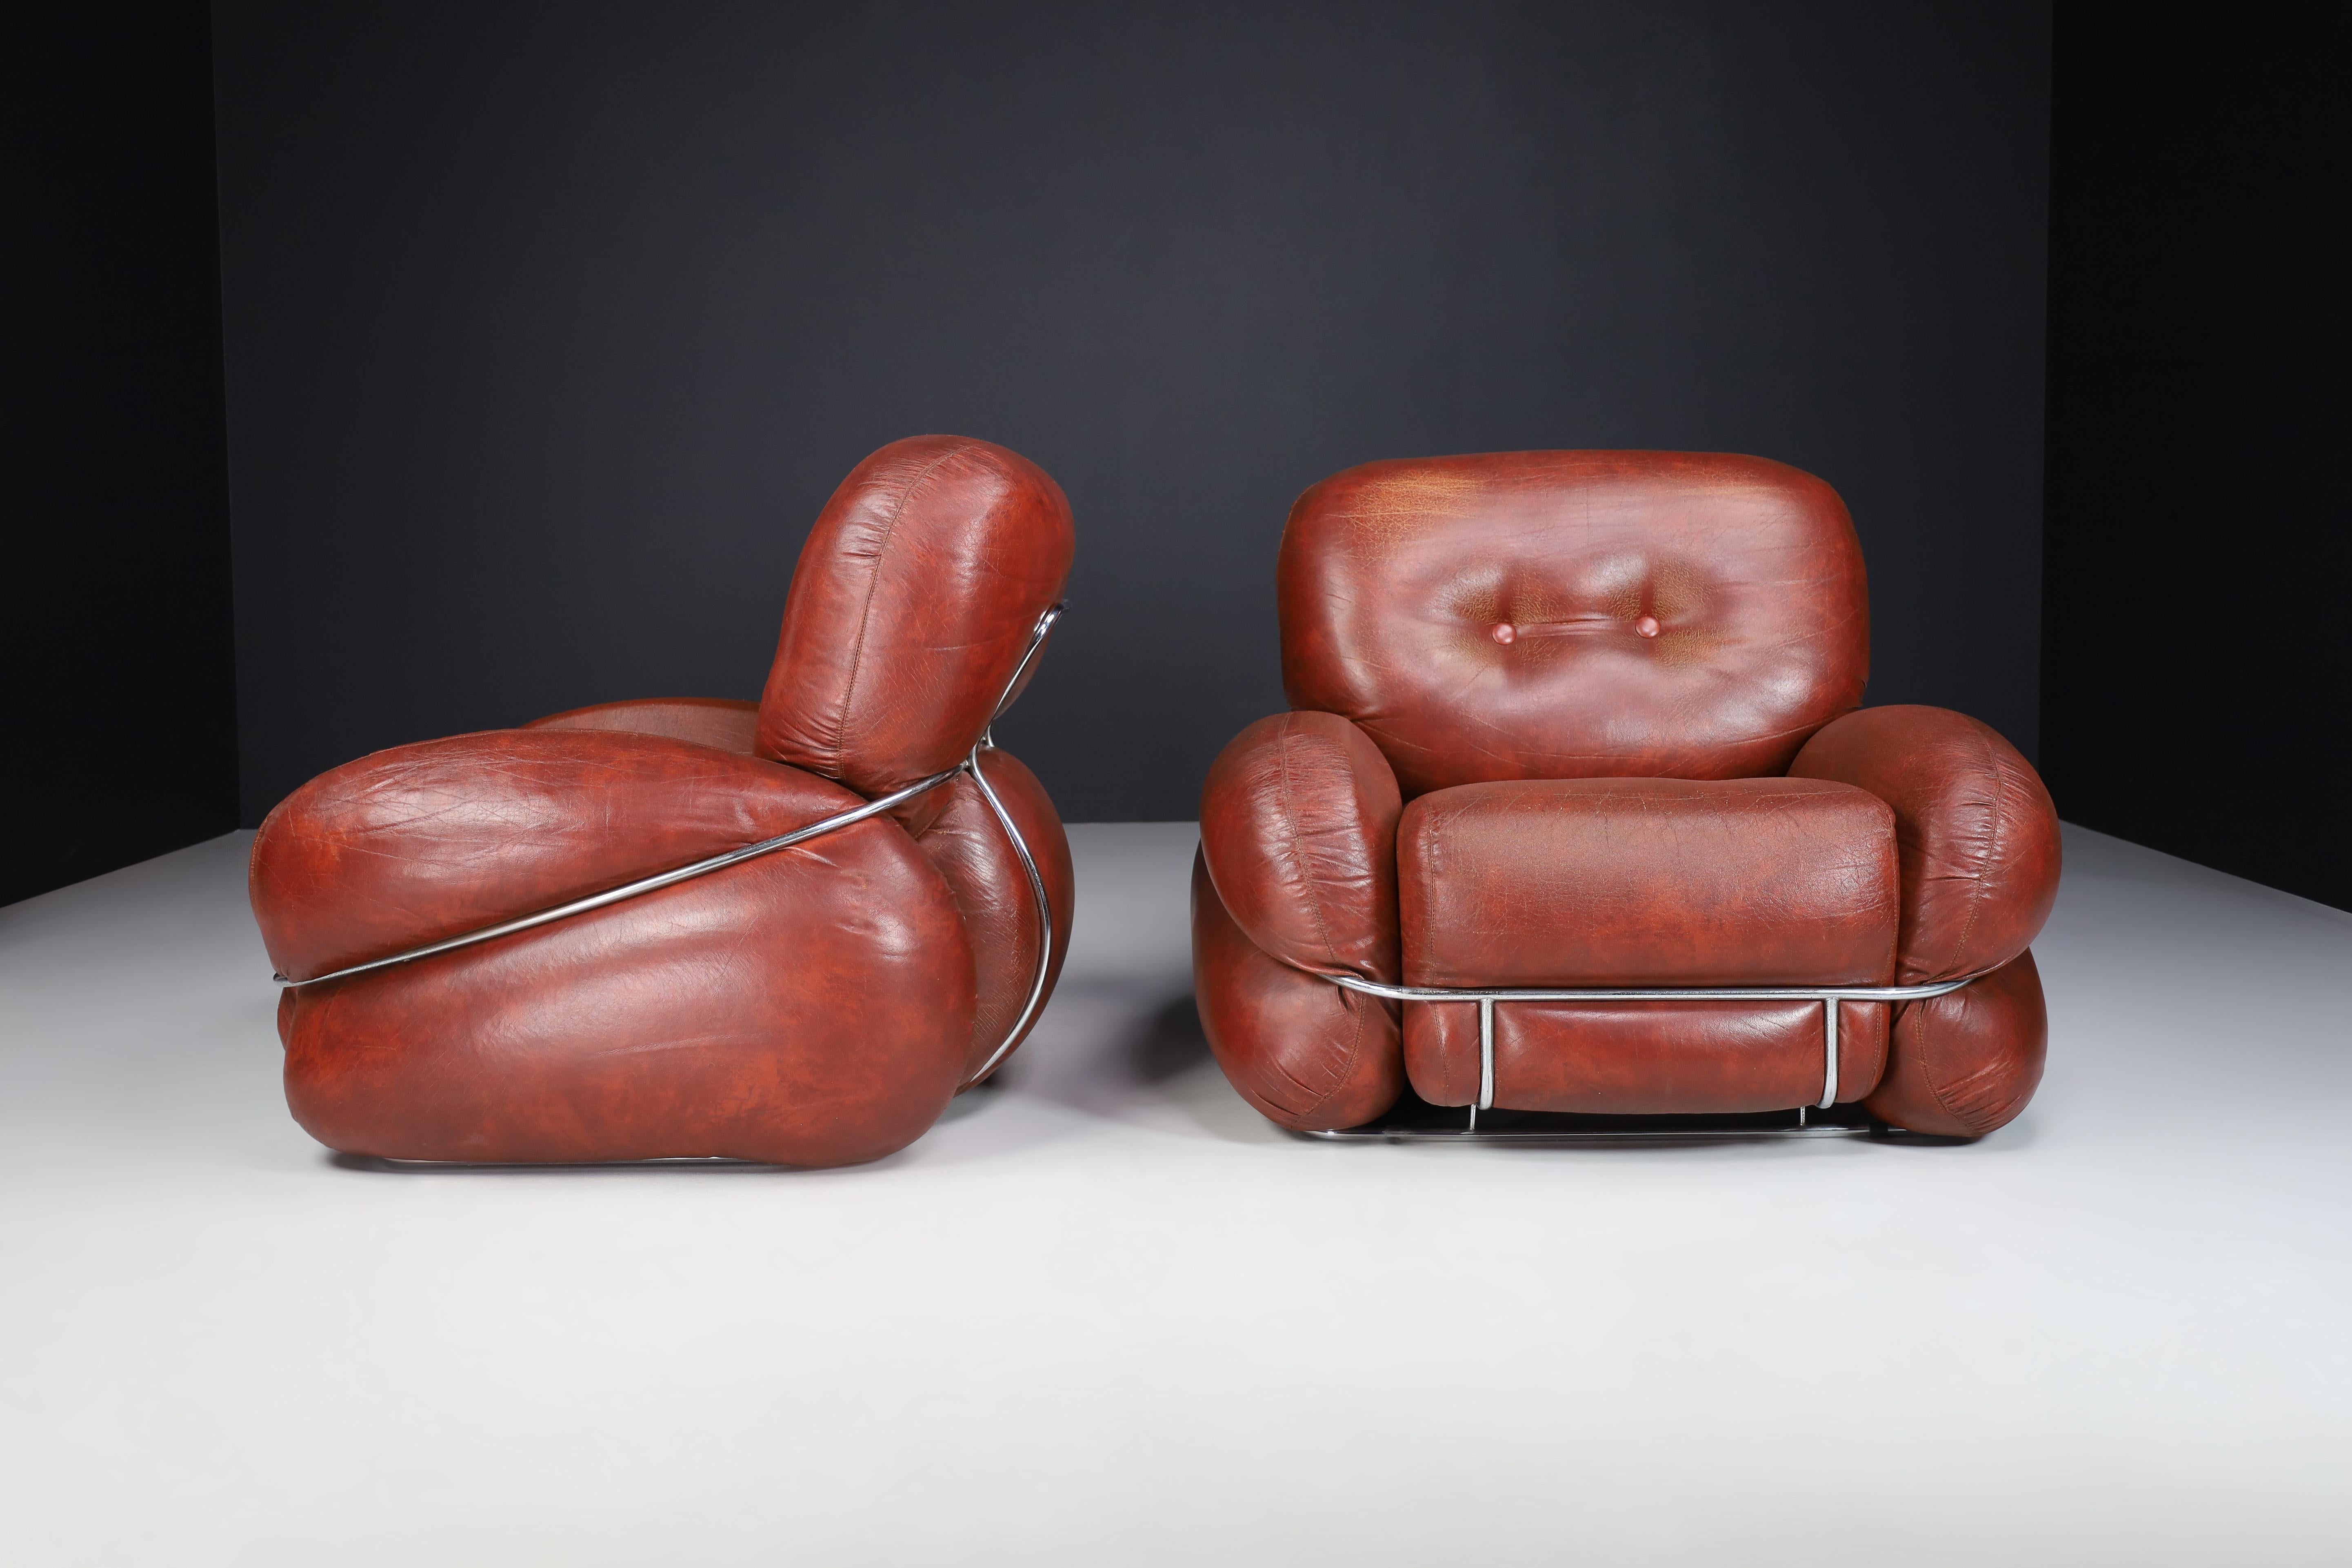 Mid-Century Modern Leder Lounge / Sessel von Adriano Piazzesi, Italien 1970er Jahre.

Ein Paar Adriano Piazzessi italienische 1970's großzügig proportioniert braun getuftet Leder Lounge-Sessel, mit Chrom gebogenen Stützen an den Seiten, vorne und